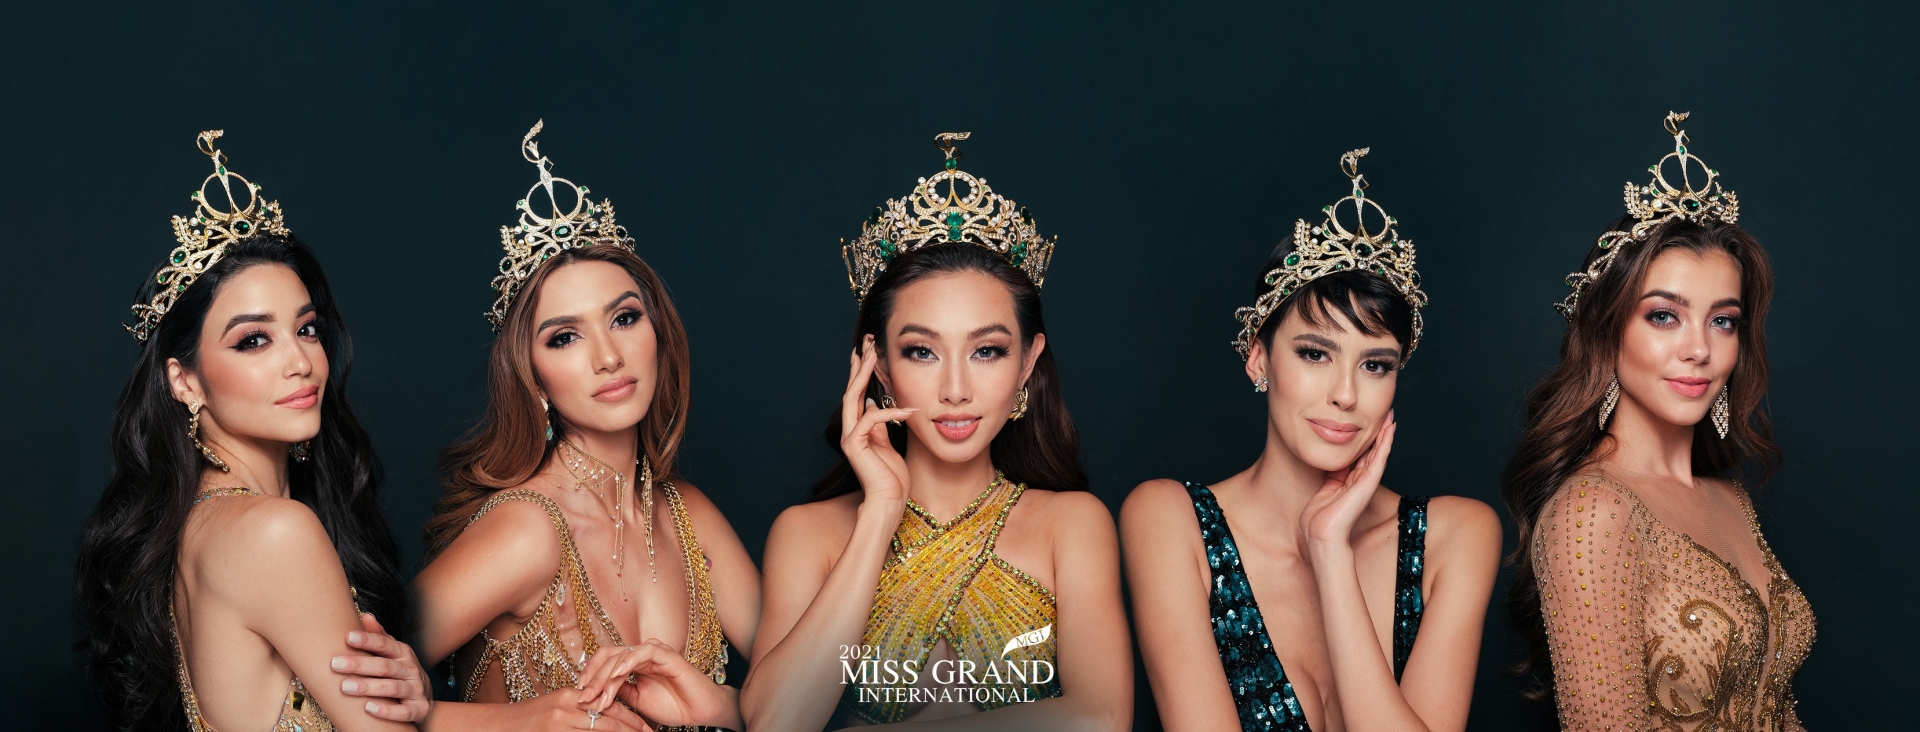 Vương miện Miss Grand 2021 đội chưa 'ấm đầu', Thùy Tiên đã nhận loạt ‘đặc ân’ khủng, fan sắc đẹp 'đã cái nư' hô vang: Việt Nam 4